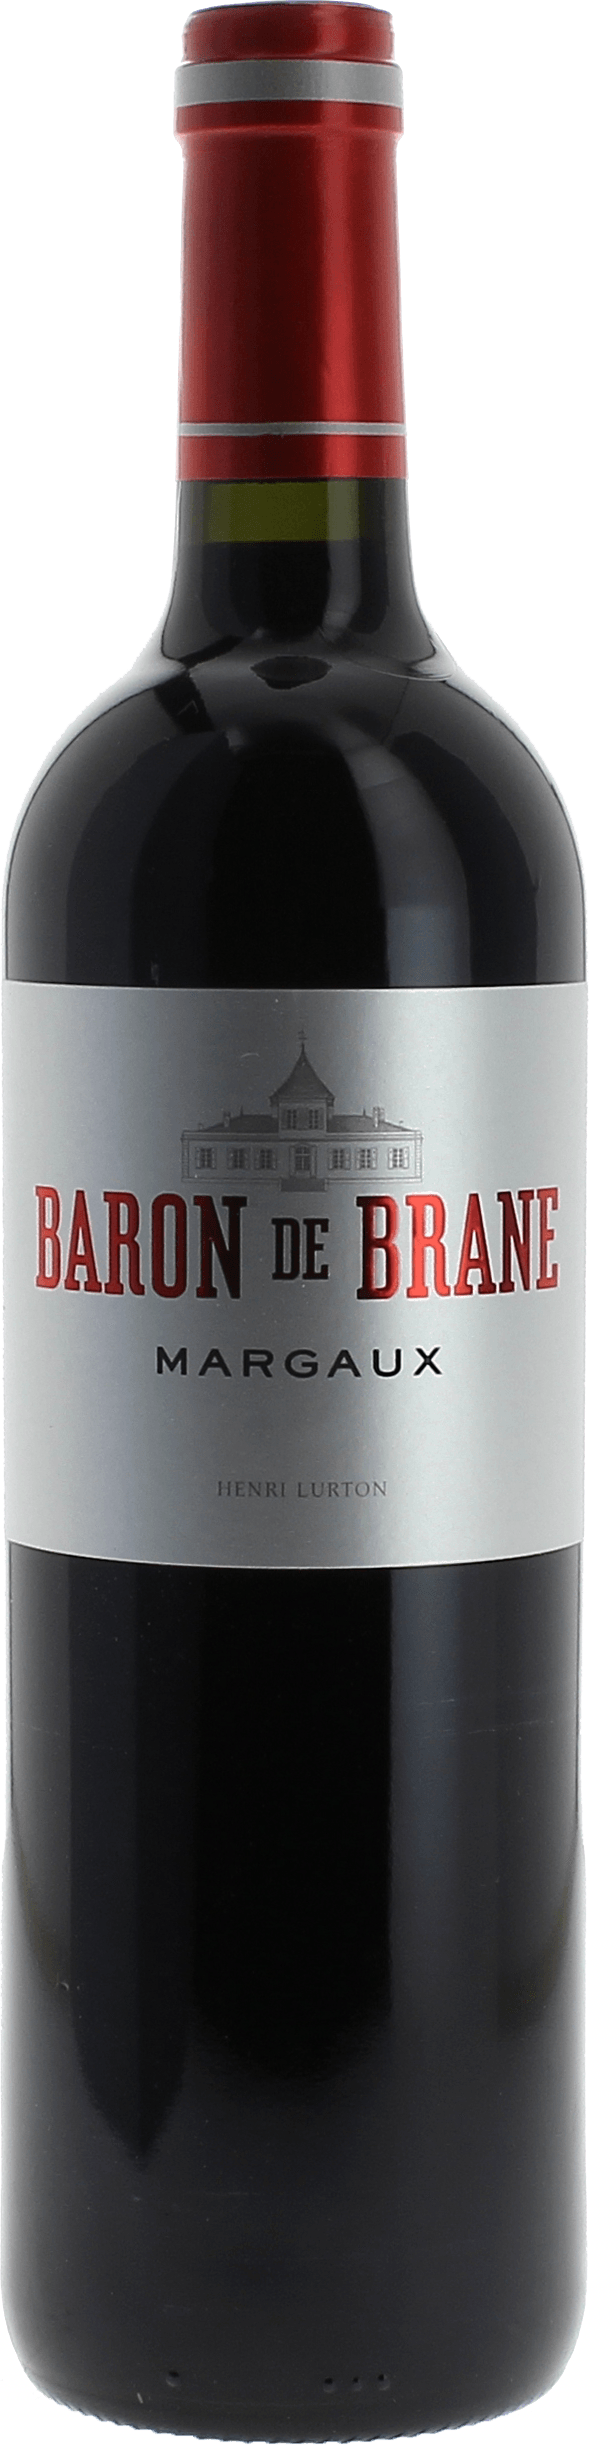 Baron de brane 2017 2nd vin du Chteau Brane Cantenac Margaux, Bordeaux rouge